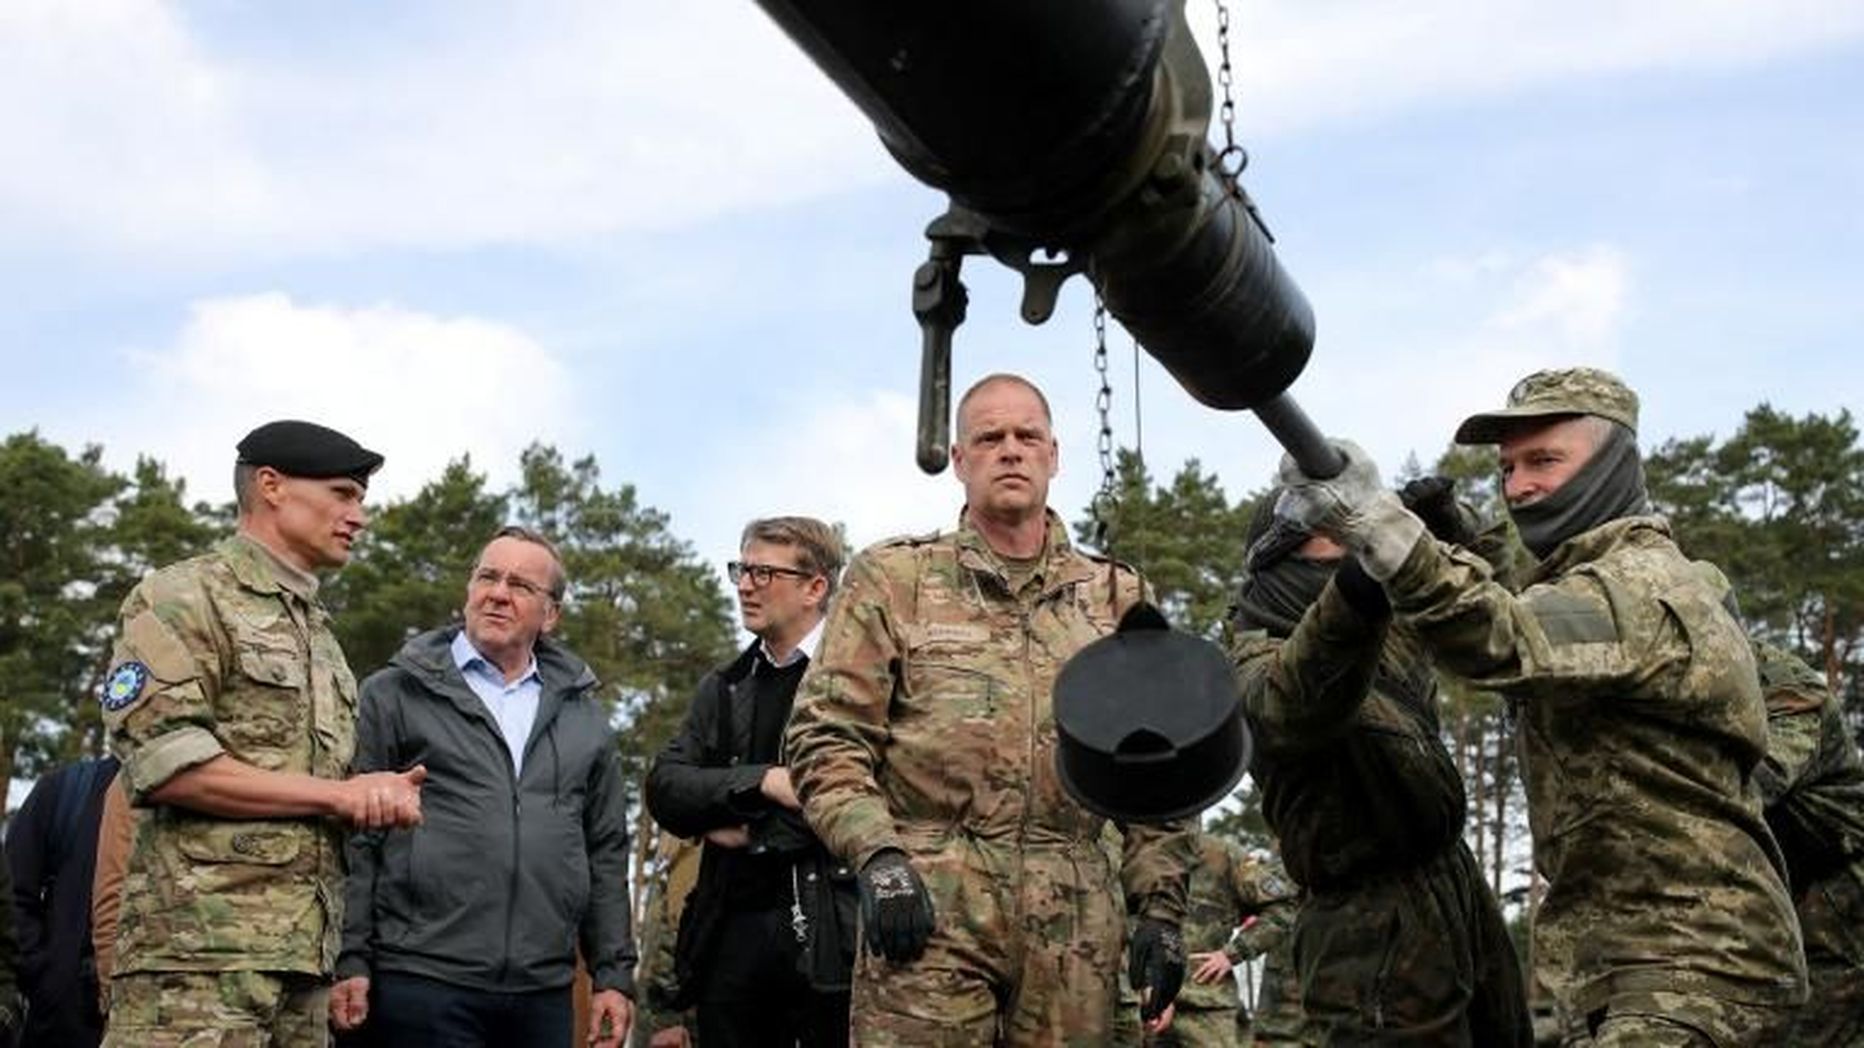 Министр обороны Германии Борис Писториус и и.о. министра обороны Дании Троэлс Лунд Поульсен наблюдают, как украинские солдаты чистят пушку танка Leopard на базе бундесвера.